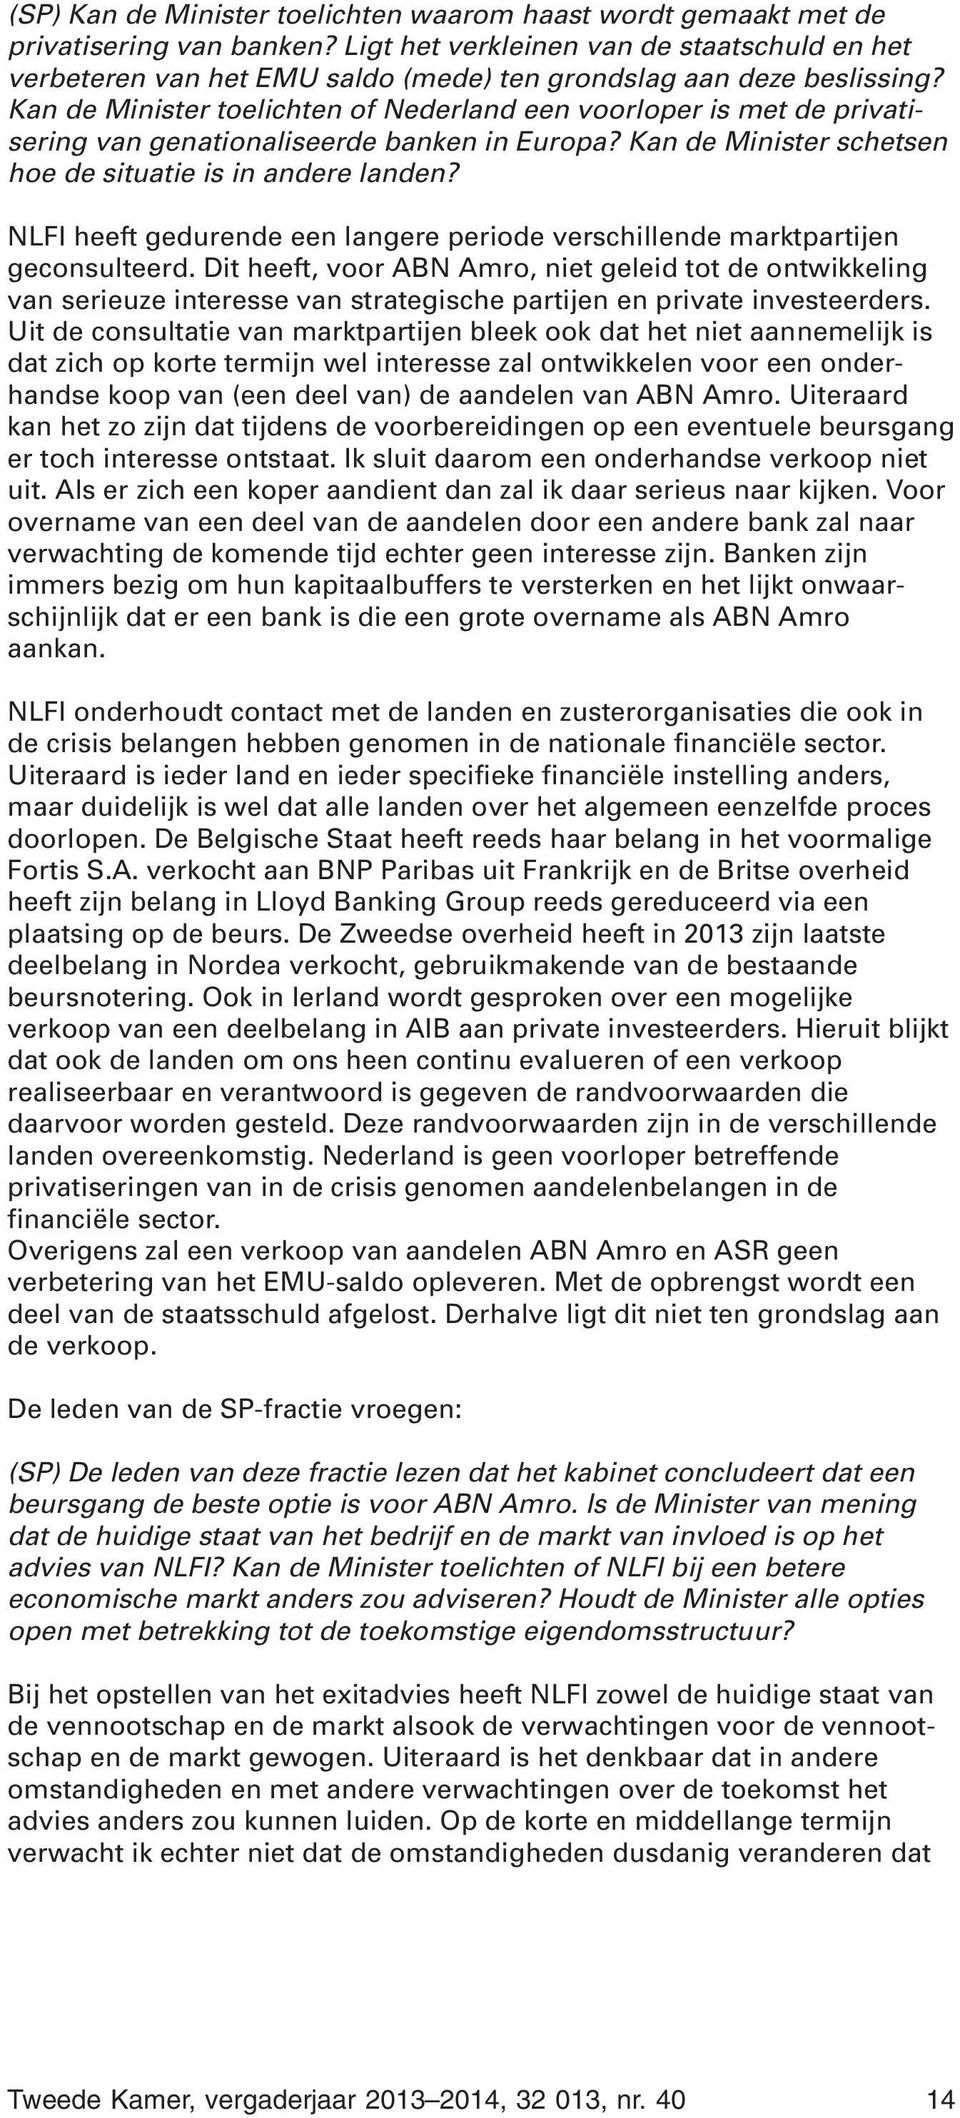 Kan de Minister toelichten of Nederland een voorloper is met de privatisering van genationaliseerde banken in Europa? Kan de Minister schetsen hoe de situatie is in andere landen?